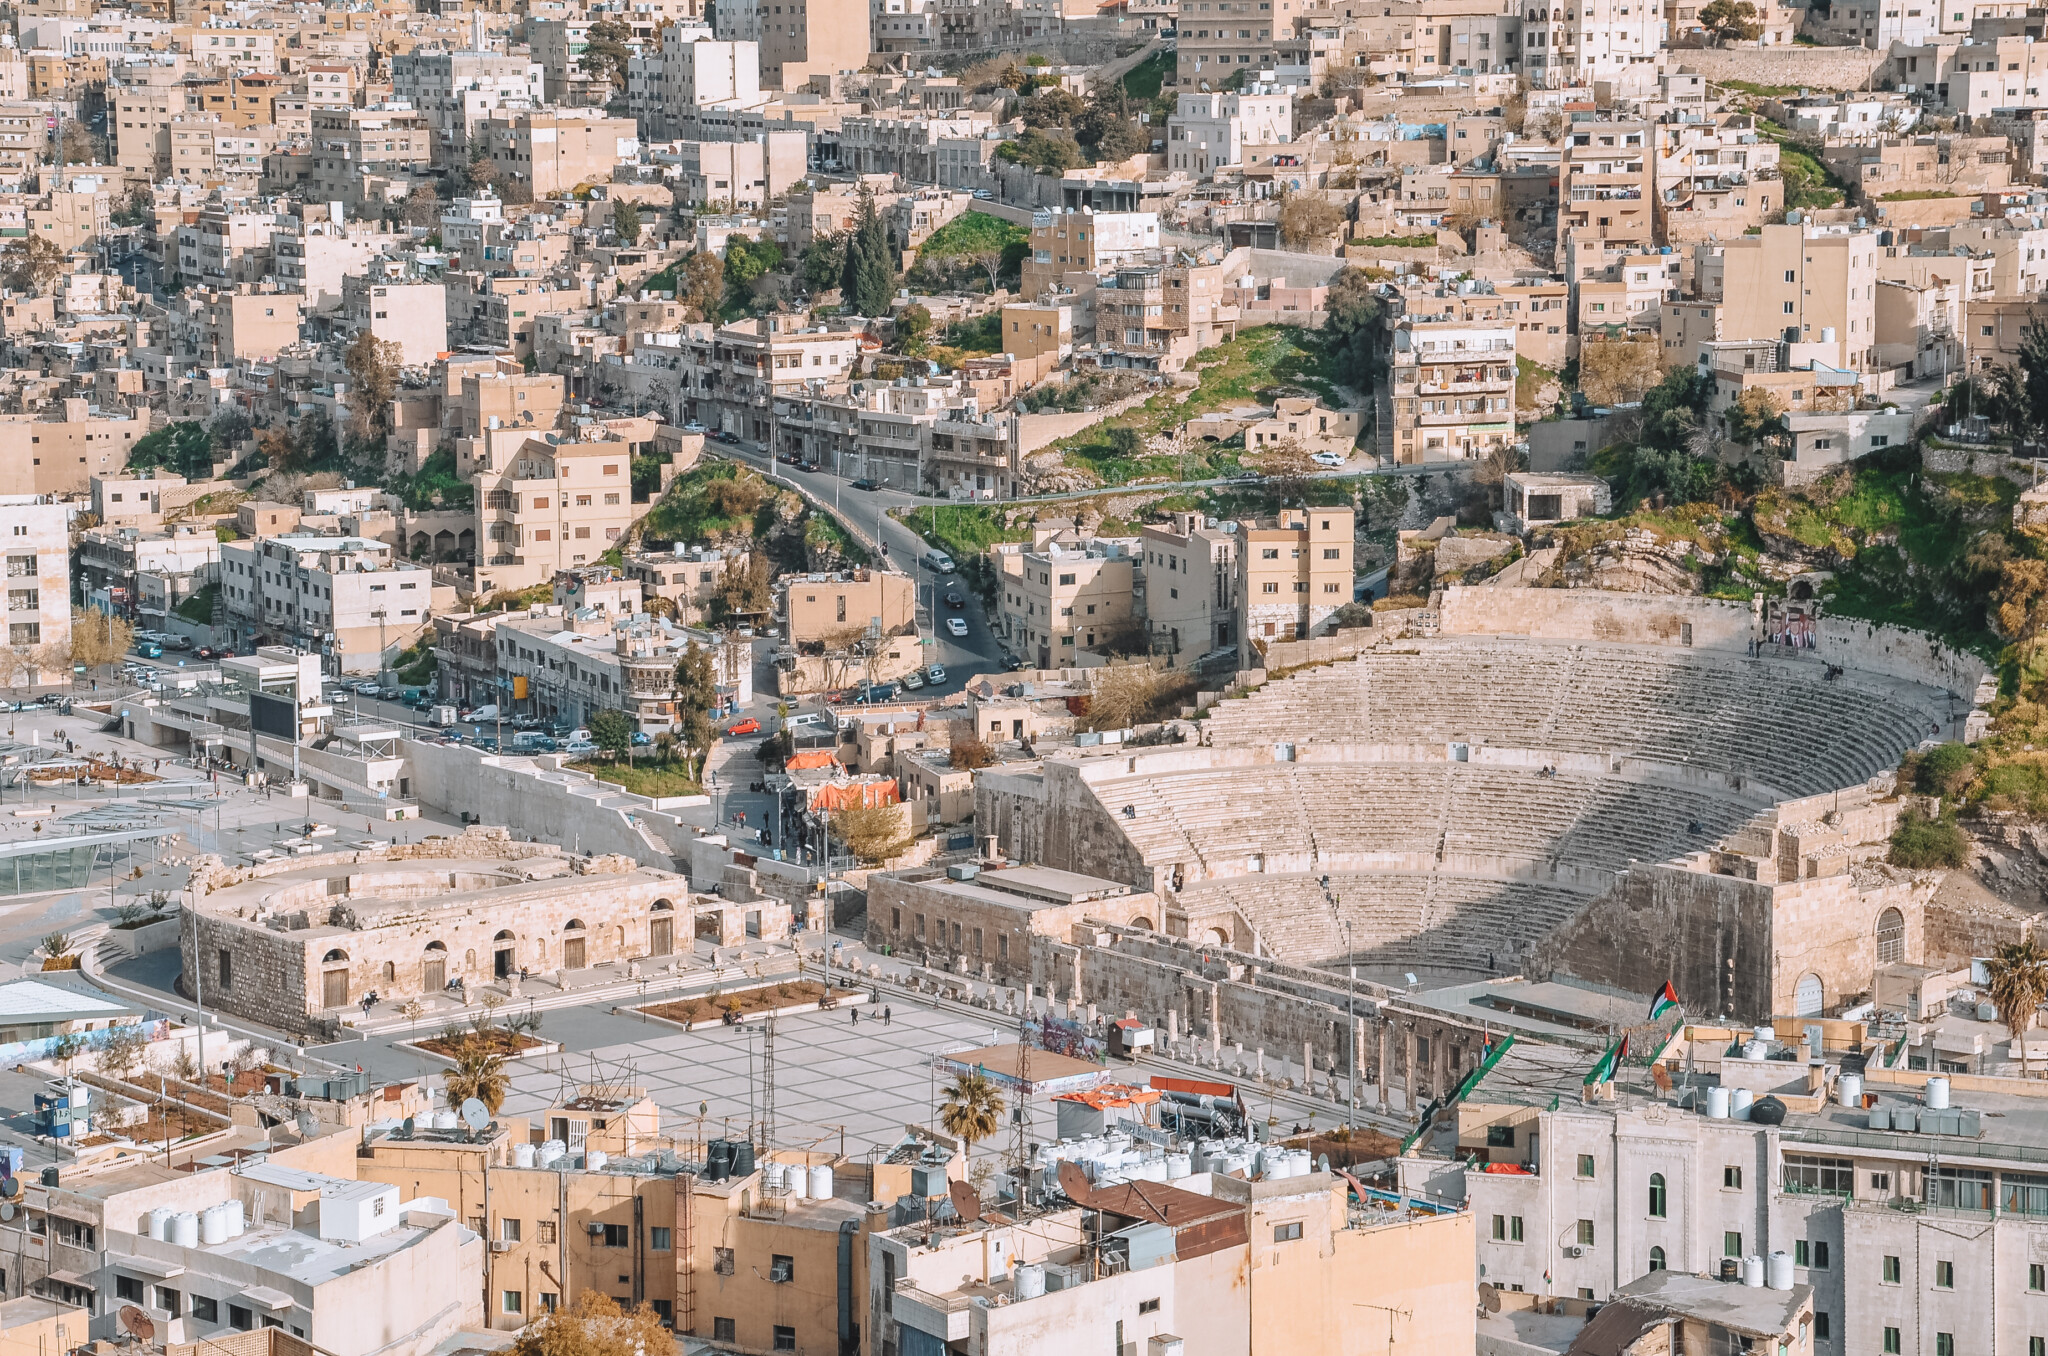 Das Römische Theater in Amman ist eine der meistbesuchten Jordanien-Sehenswürdigkeiten